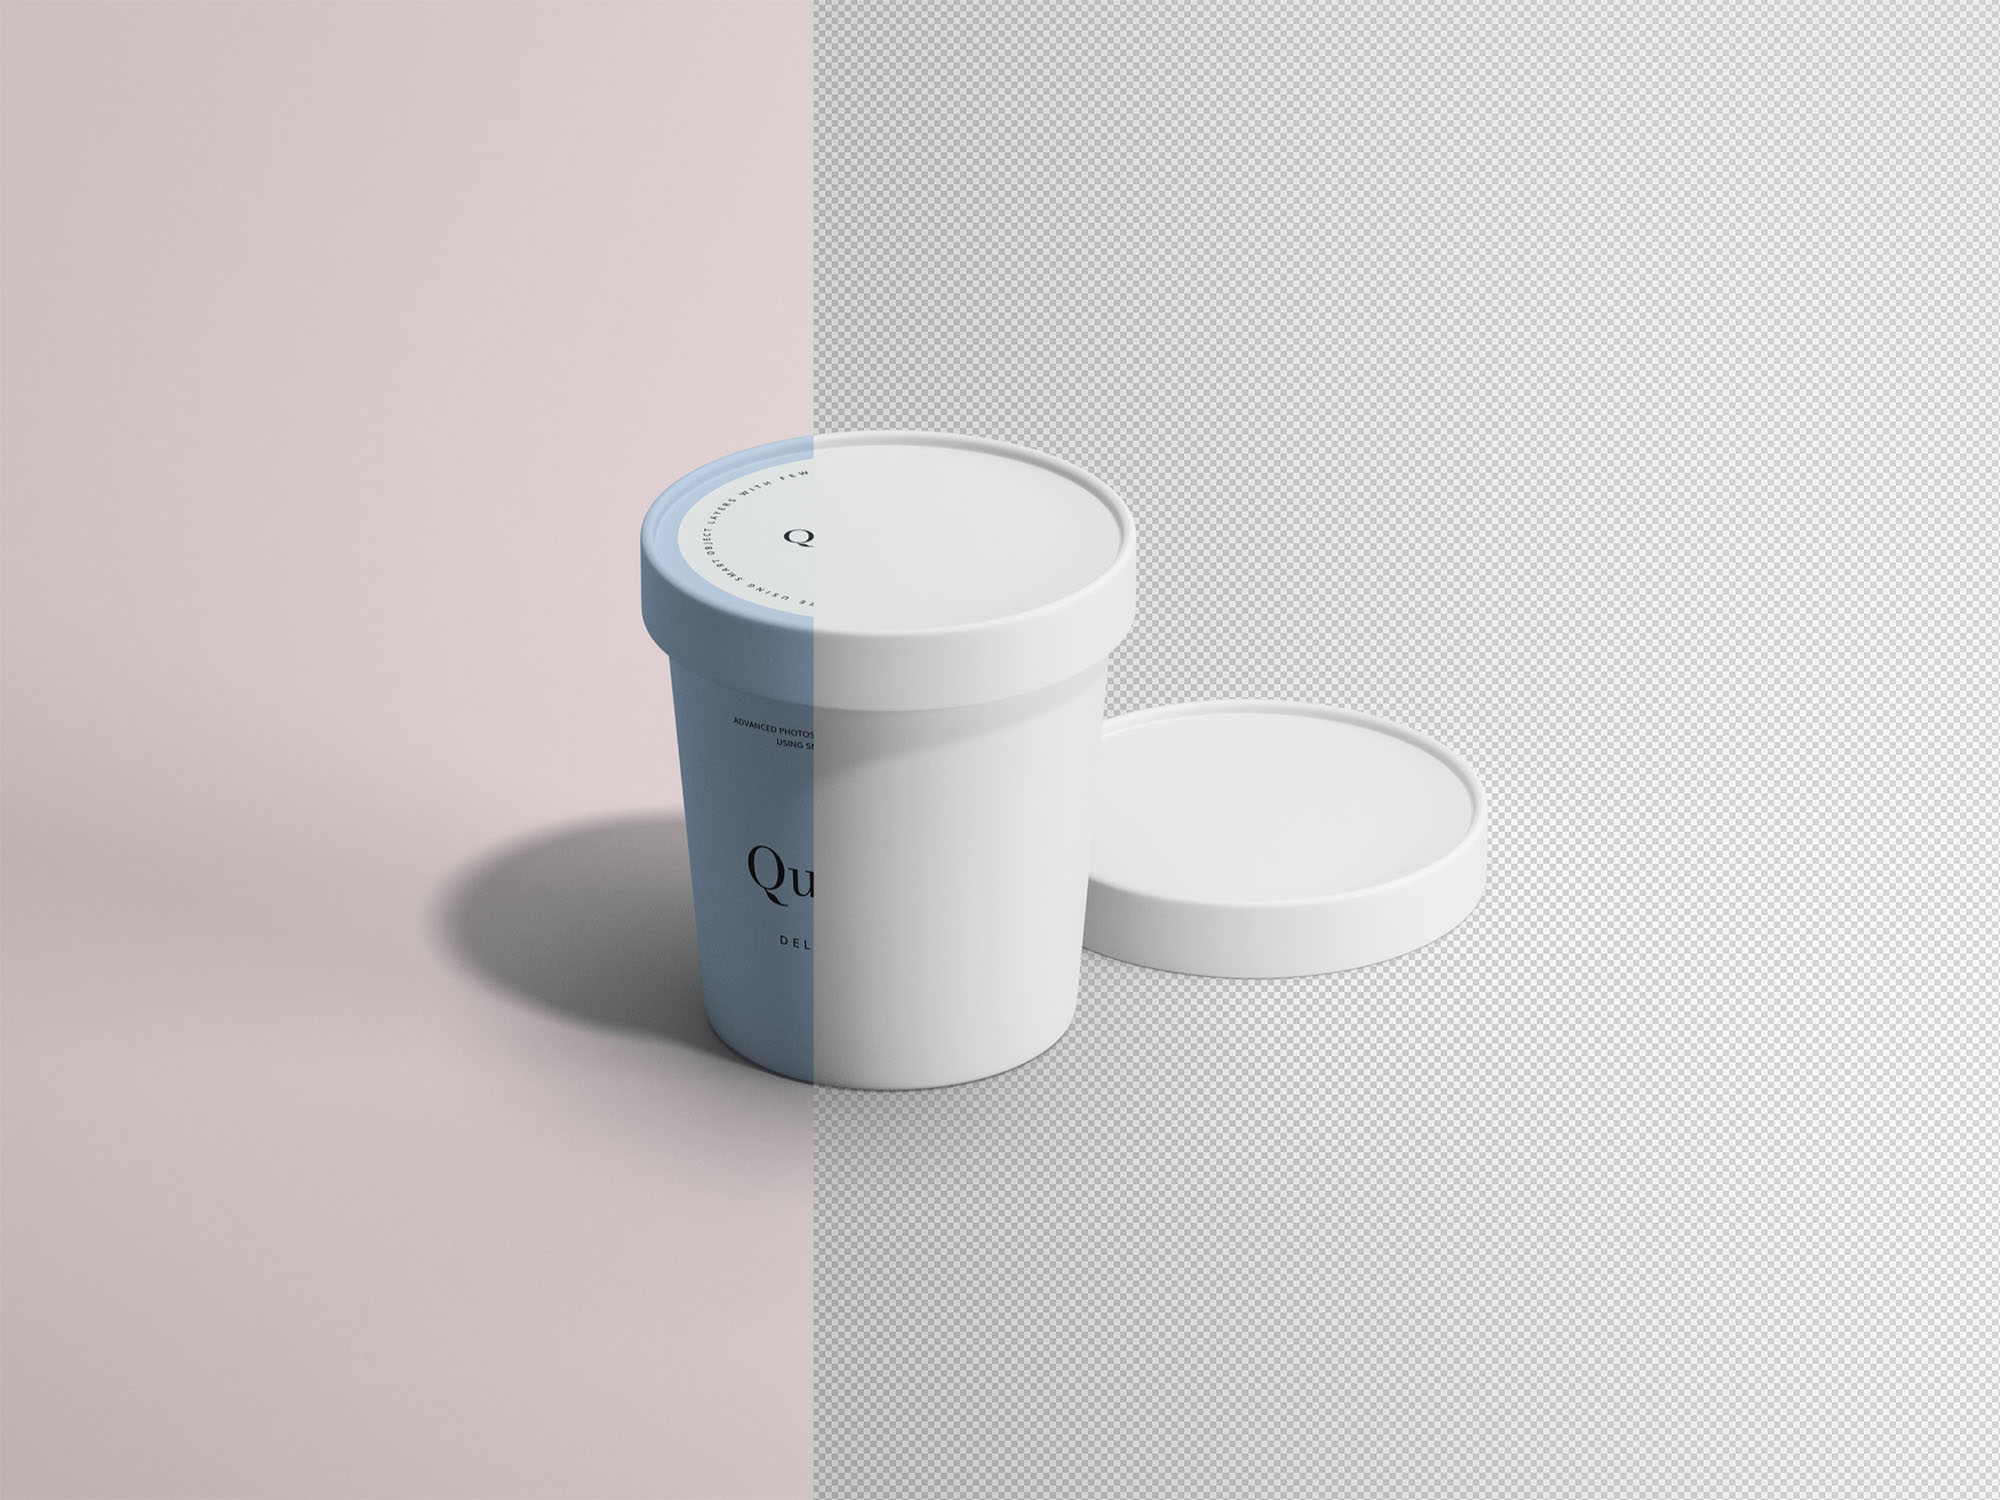 冰淇淋雪糕纸杯外观设计效果图第一素材精选 Ice Cream Paper Cup Mockup插图(1)